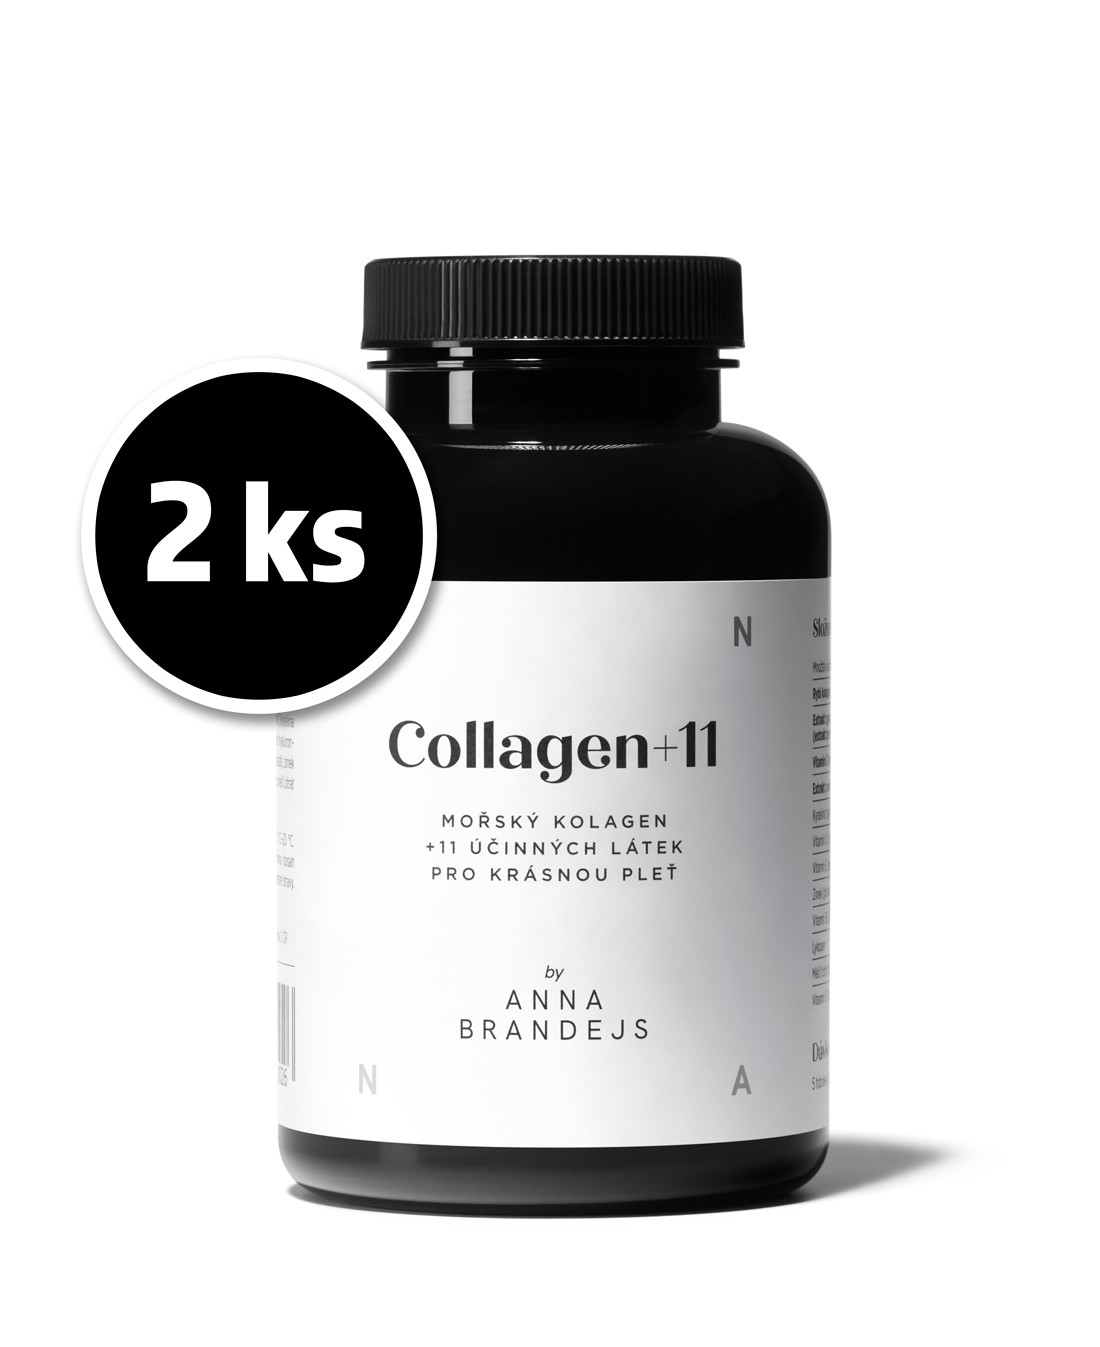 2 ks Collagen+11 ANNA BRANDEJS